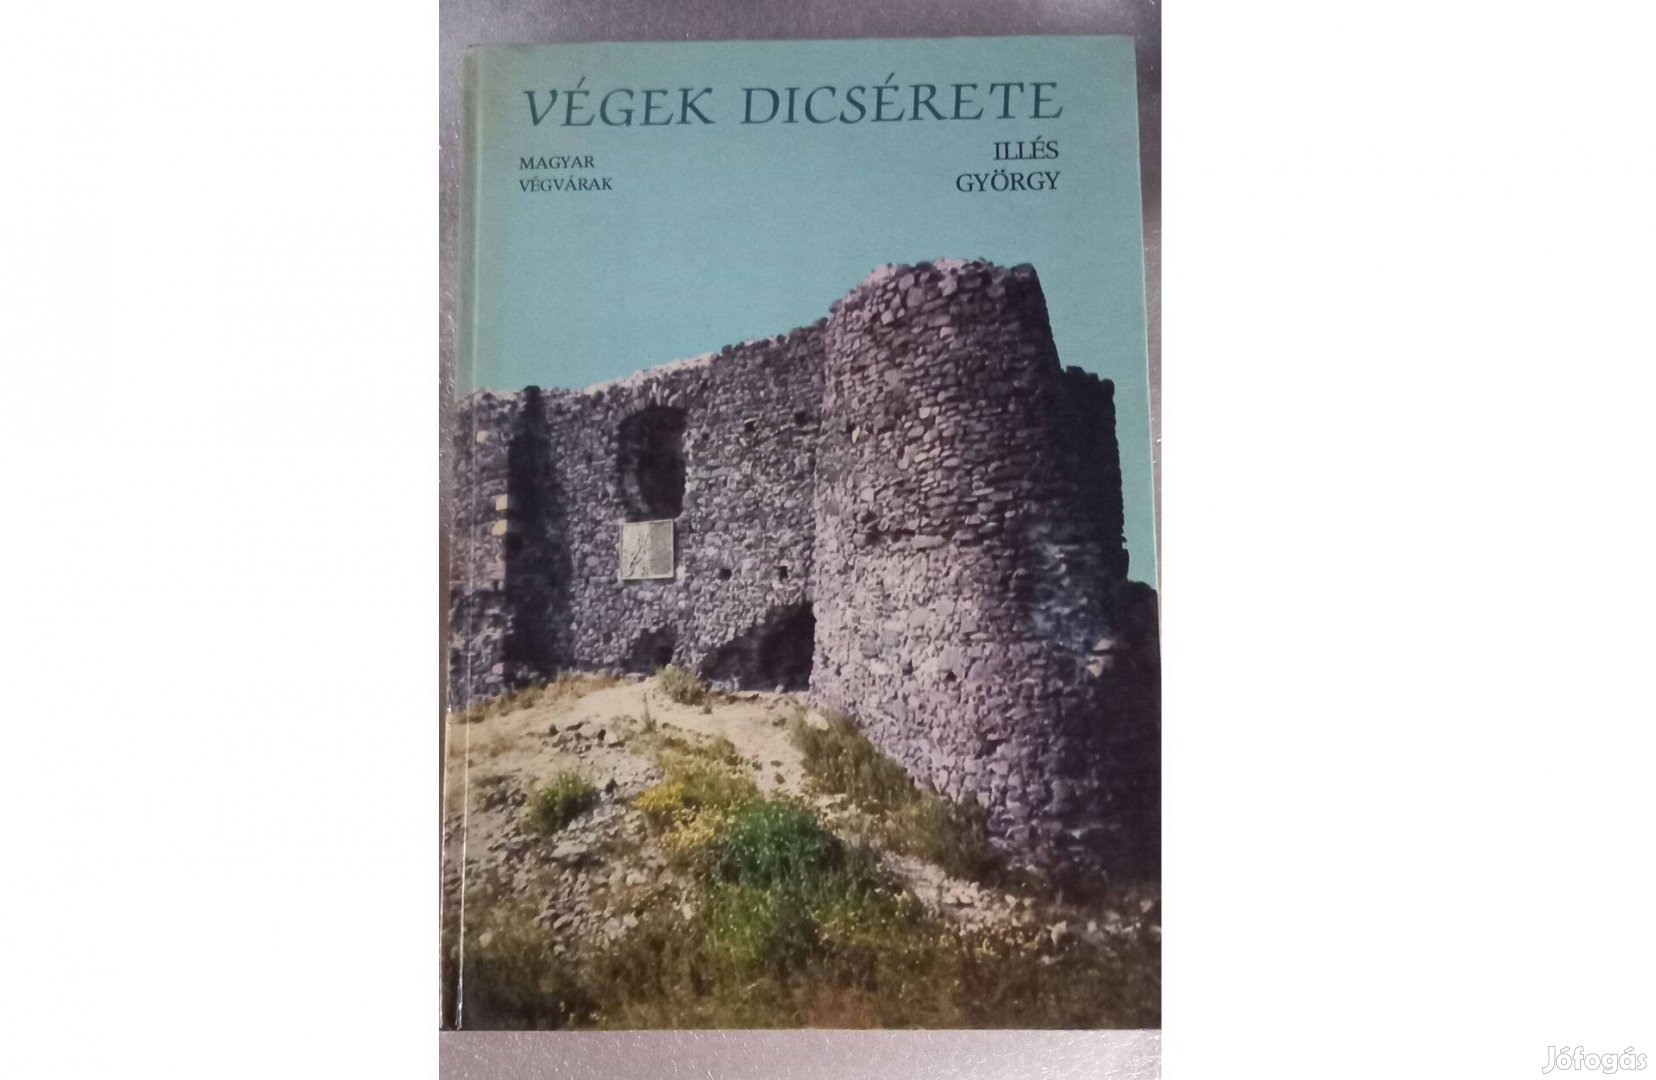 Illés György Végek dicsérete (Magyar végvárak) könyv